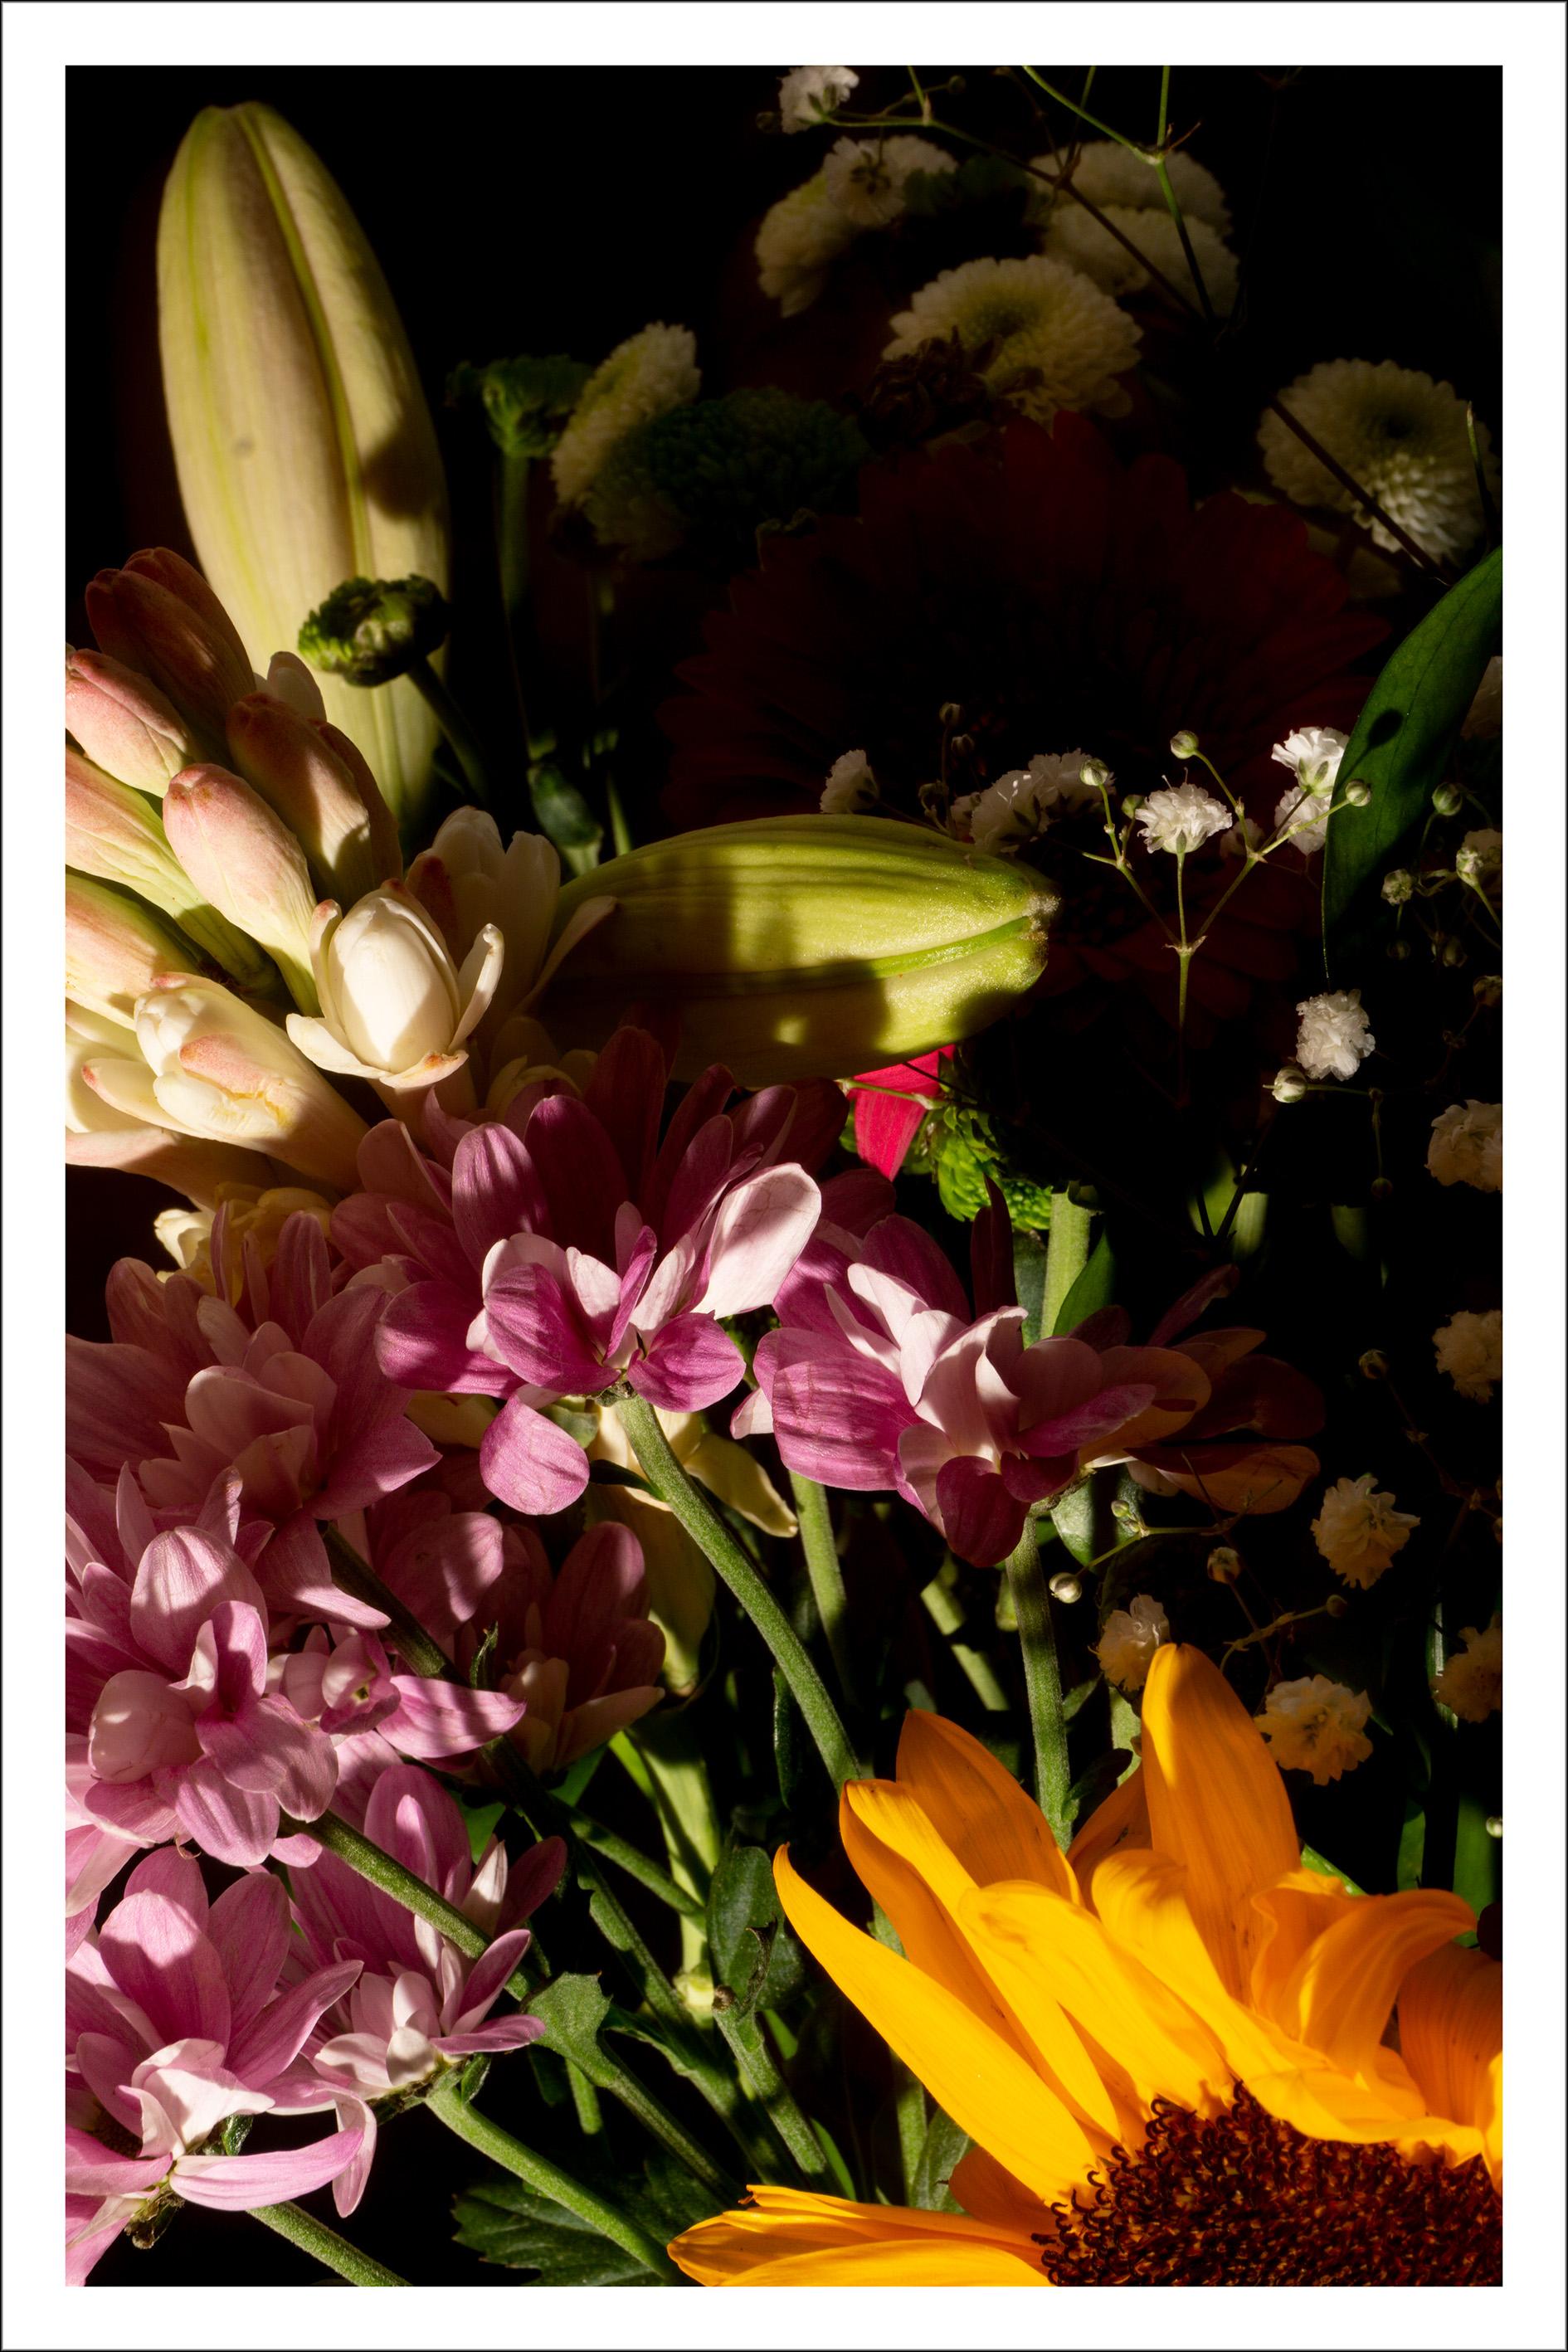 Colorful Flower Bouquet Mix, Summer Light Still Life Giclée Print, Soft Tones